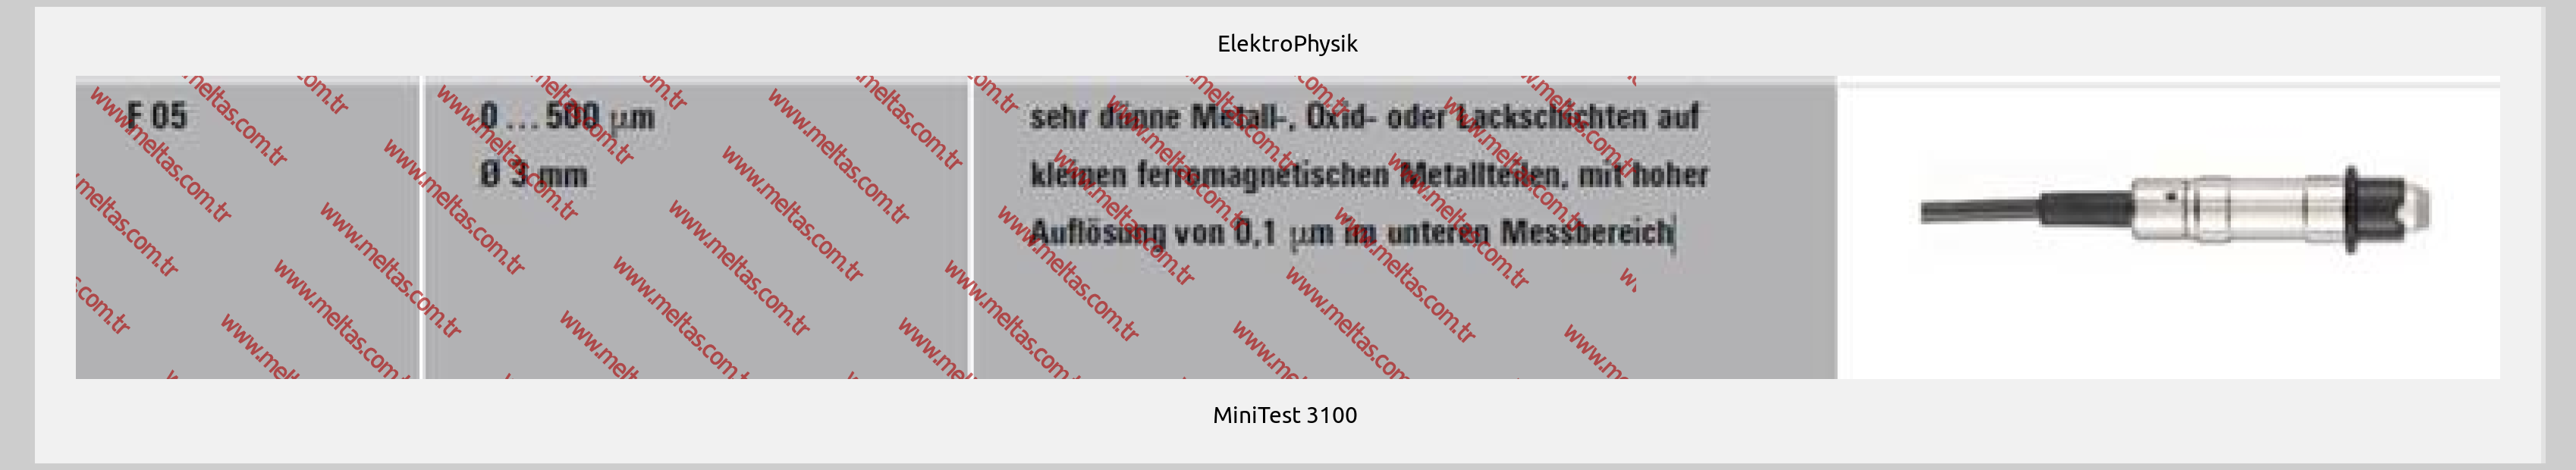 ElektroPhysik-MiniTest 3100 